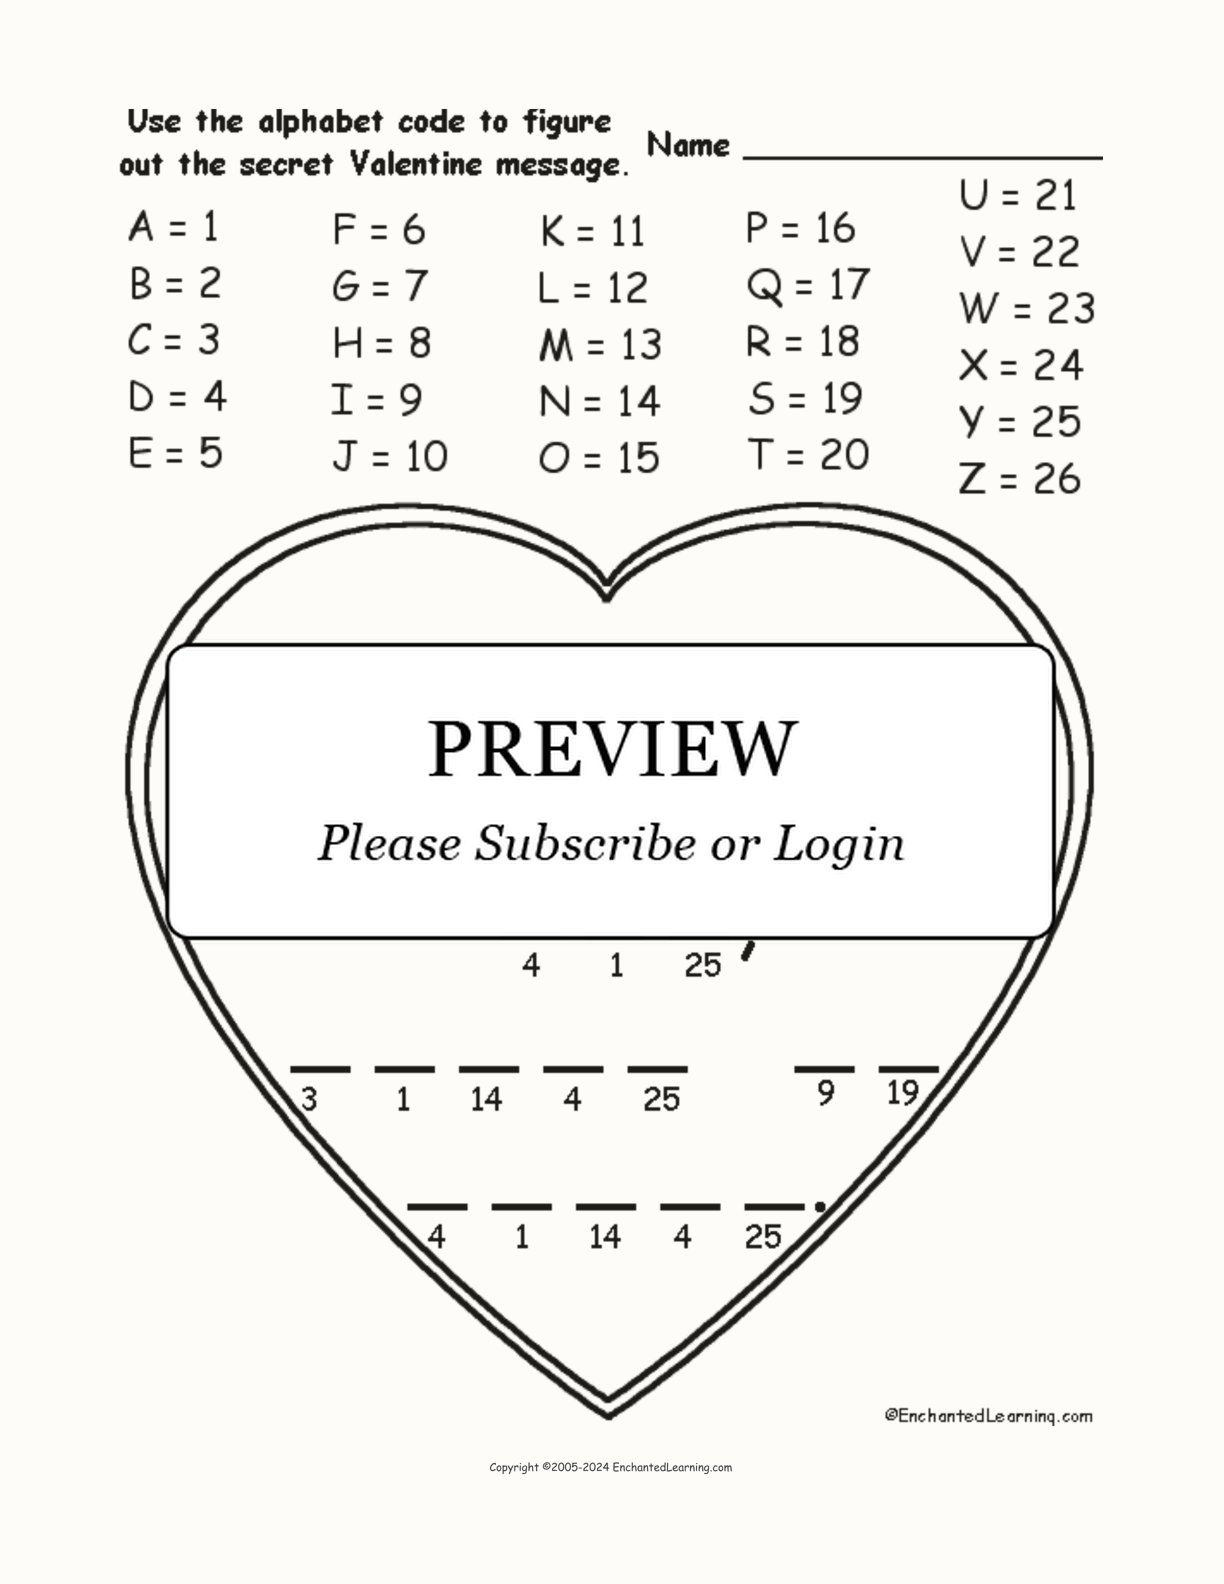 Valentine Alphabet Code interactive worksheet page 1